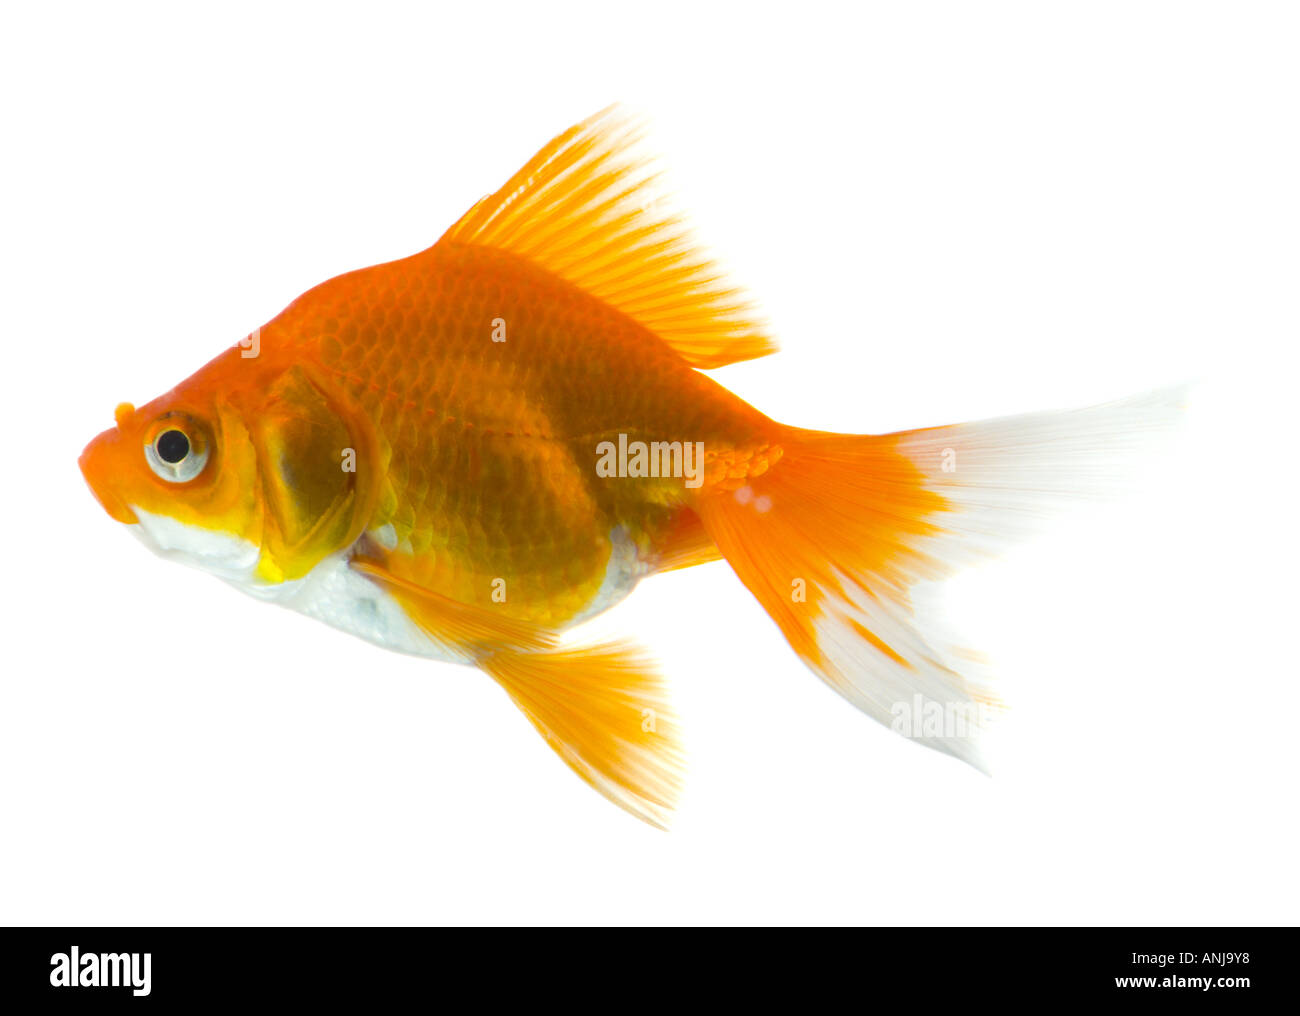 Goldfish cutout Stock Photo